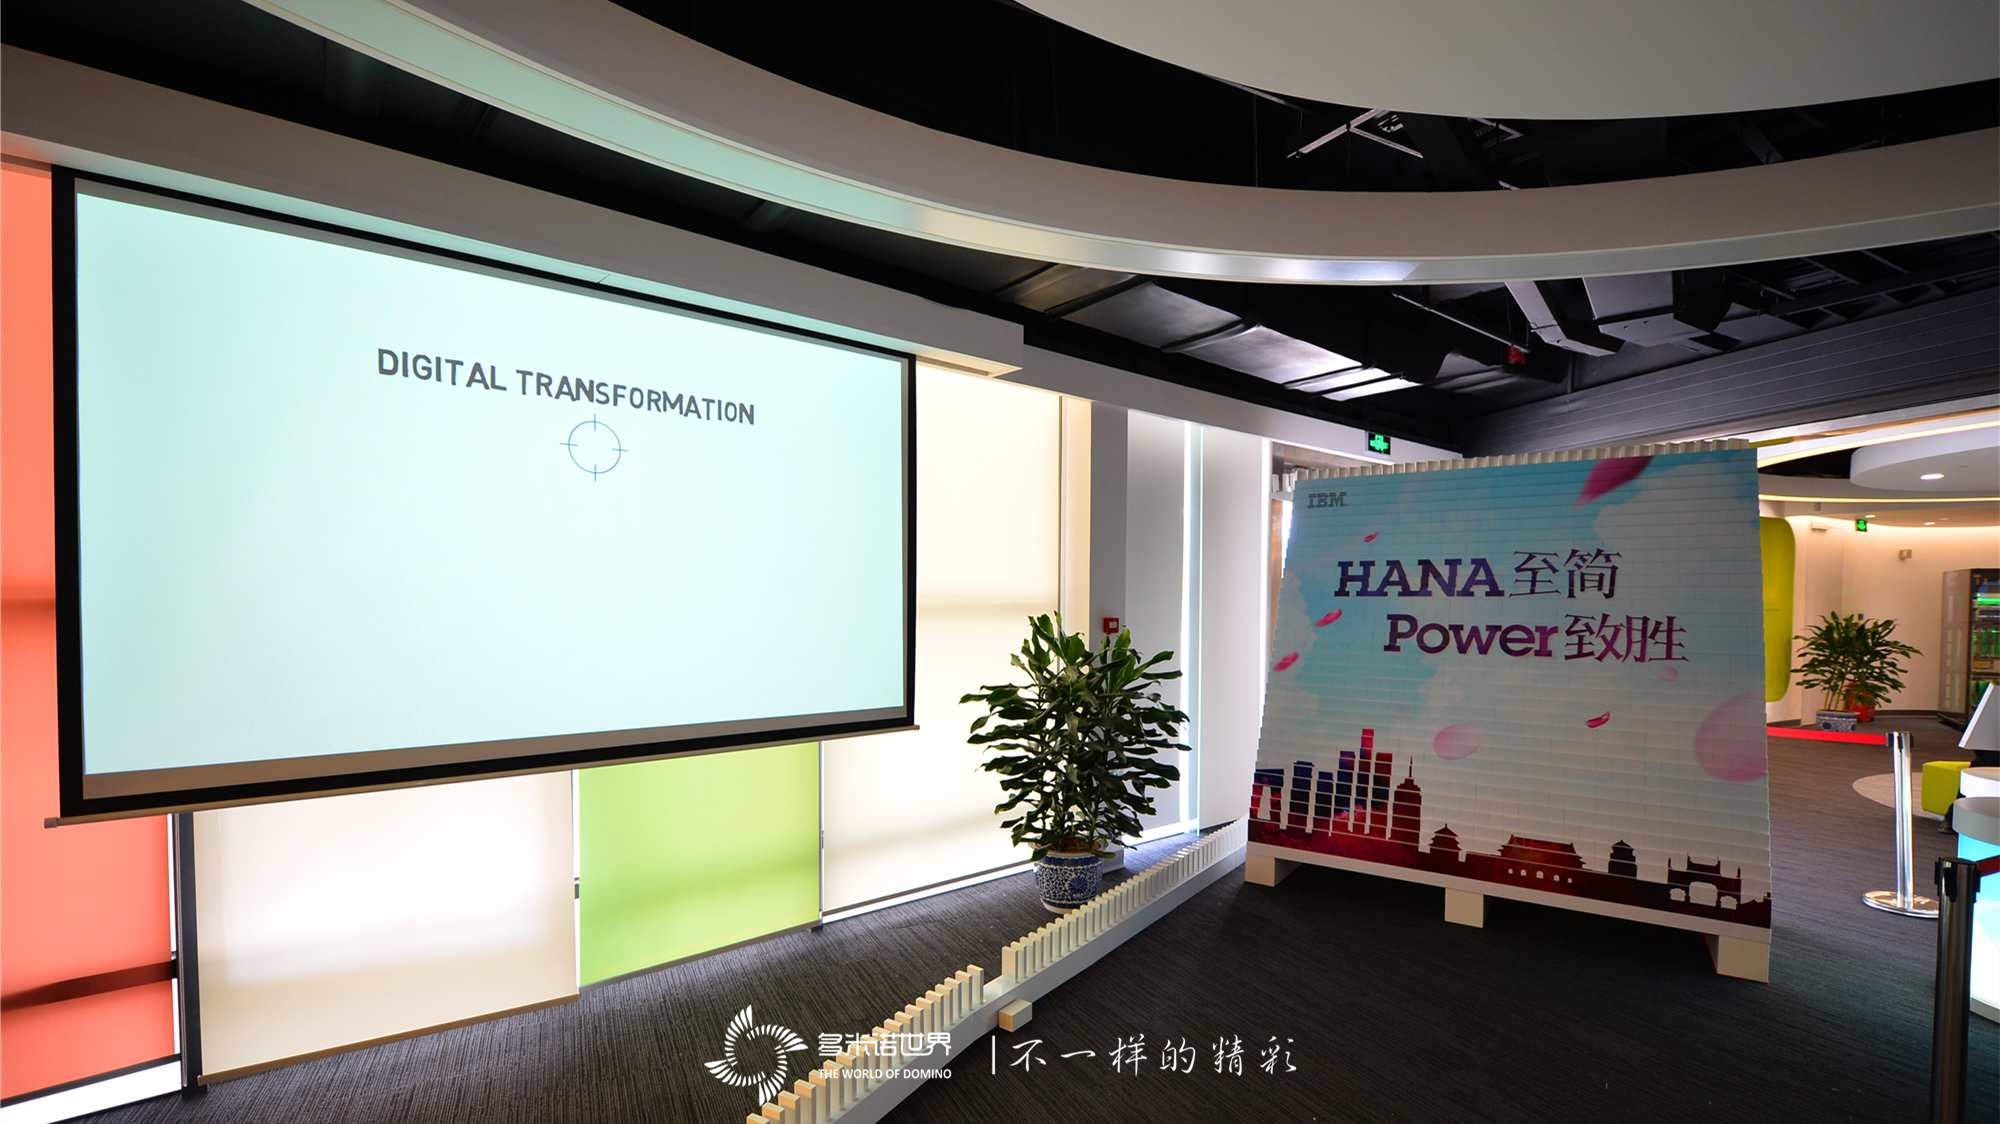 多米诺揭幕IBM大中华区首个SAP HANA on Power演示中心